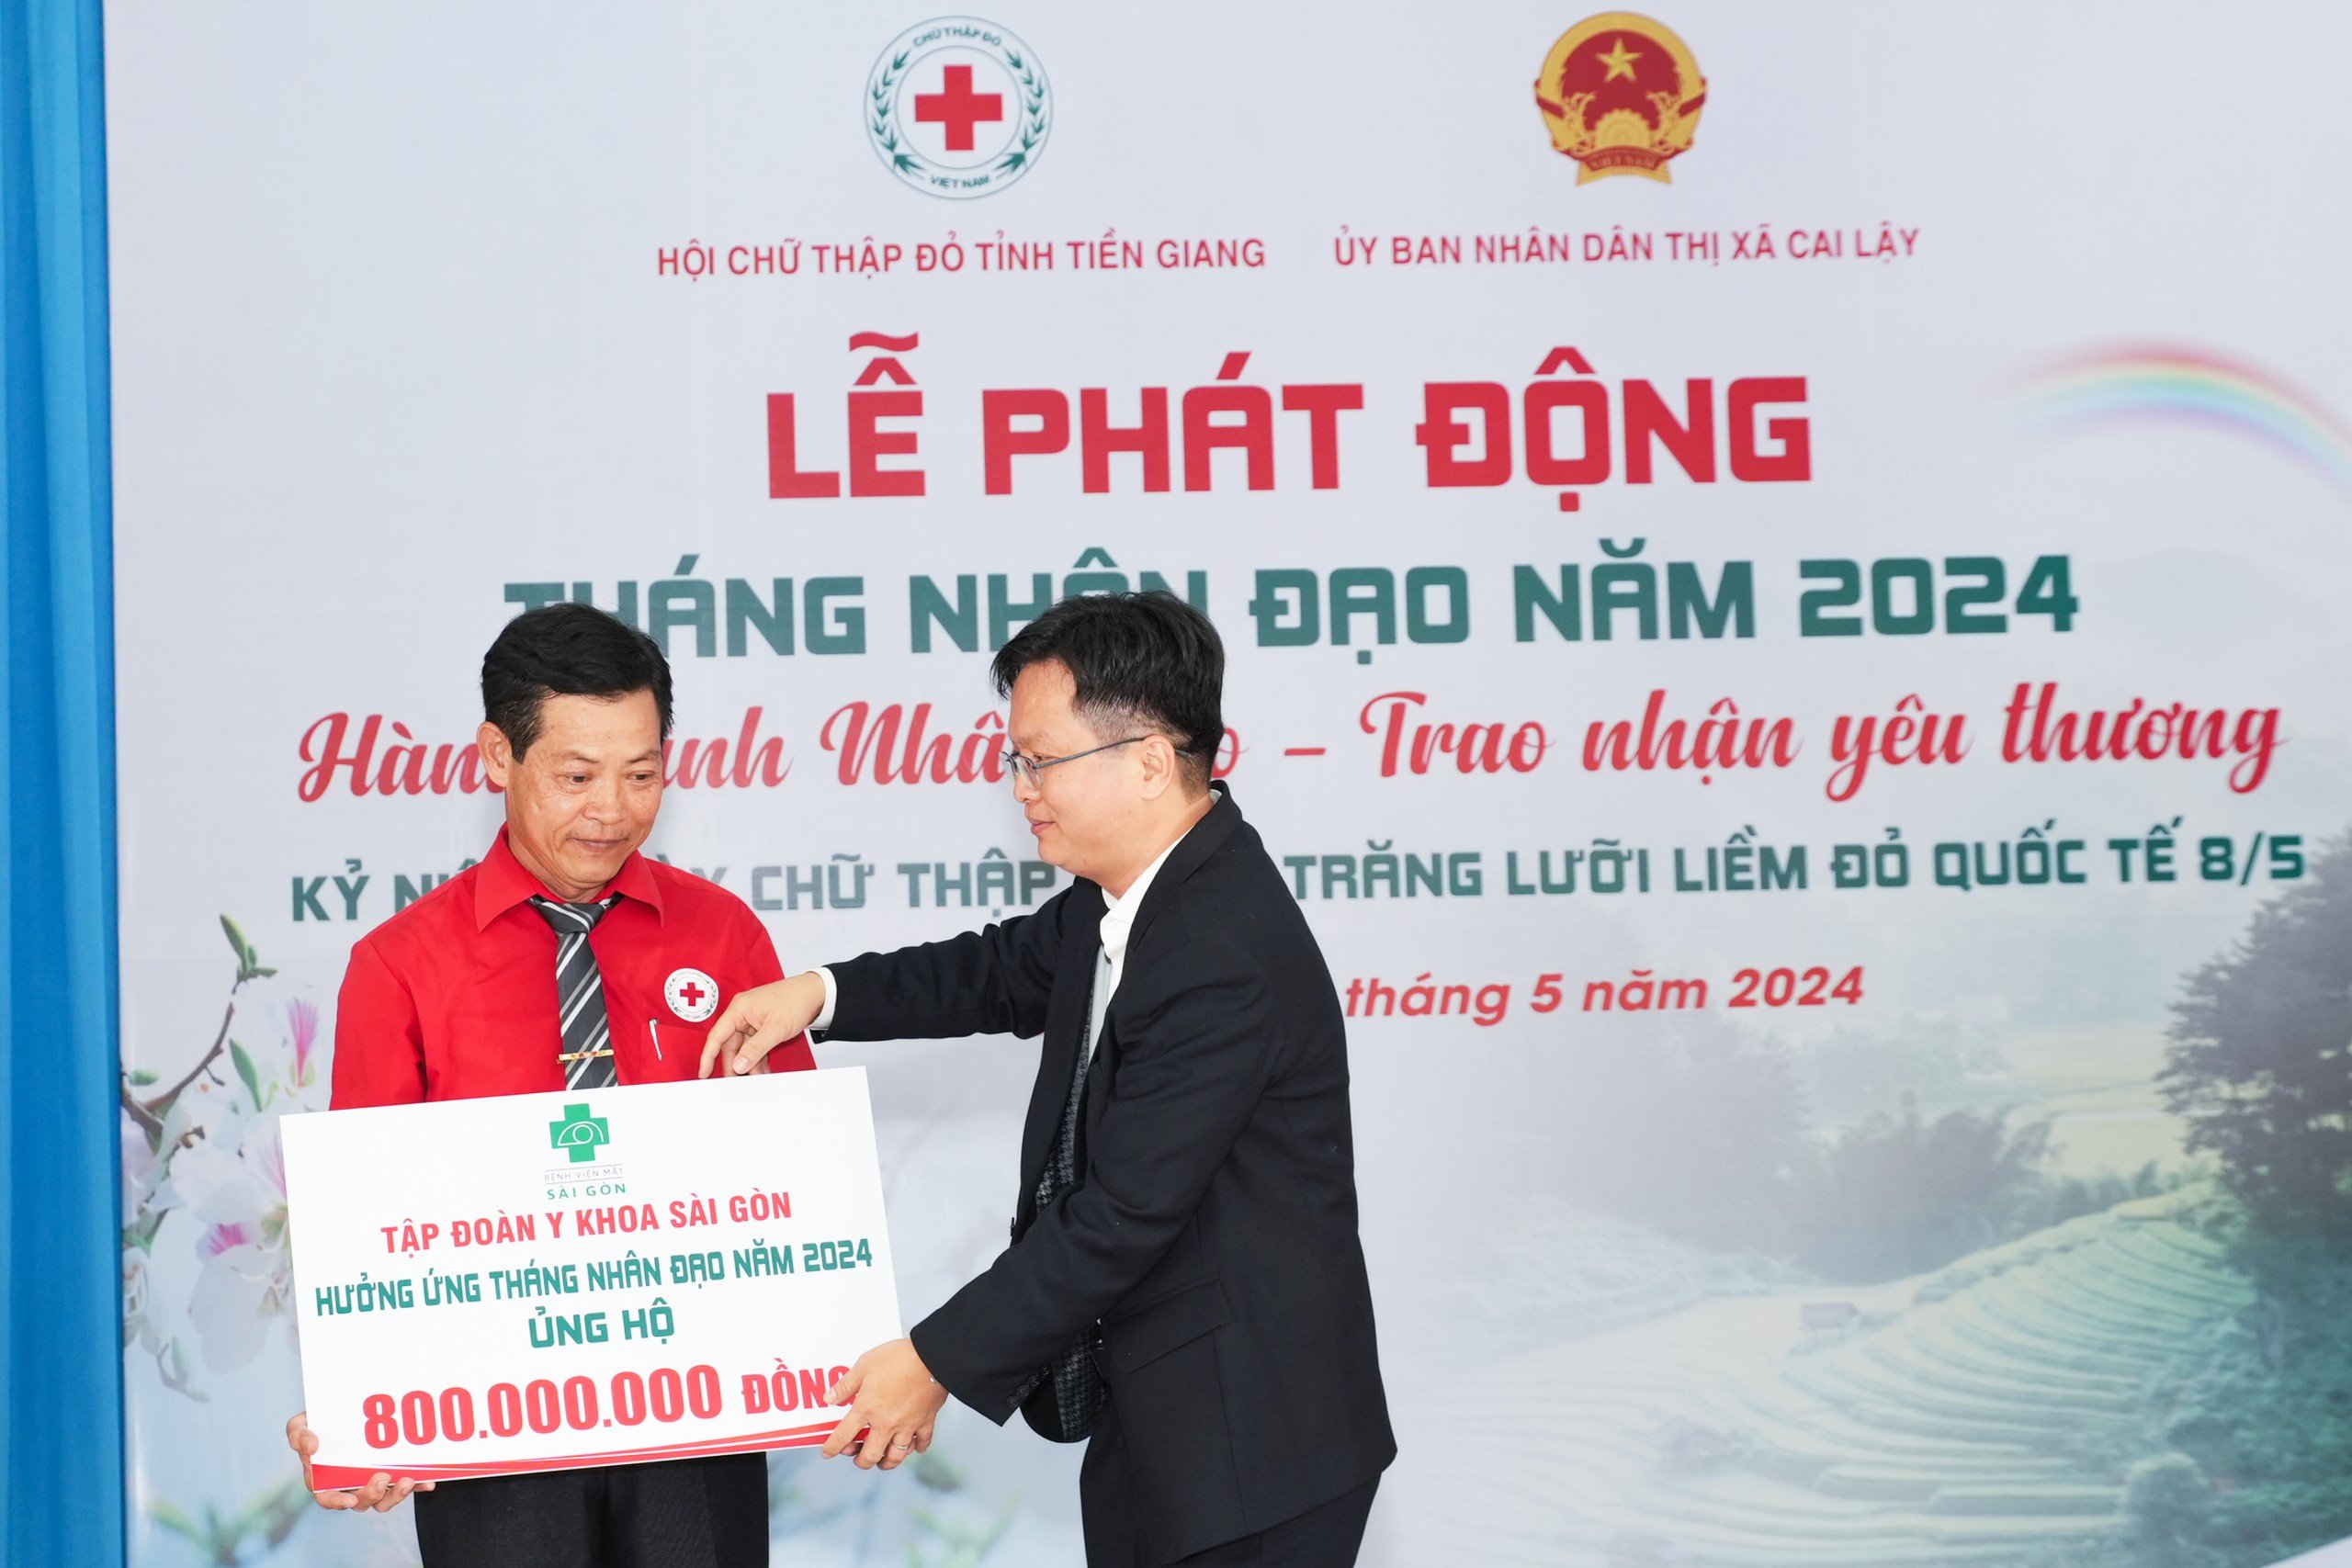 Mắt Sài Gòn khám mắt từ thiện cho 5.000 người tại Tiền Giang